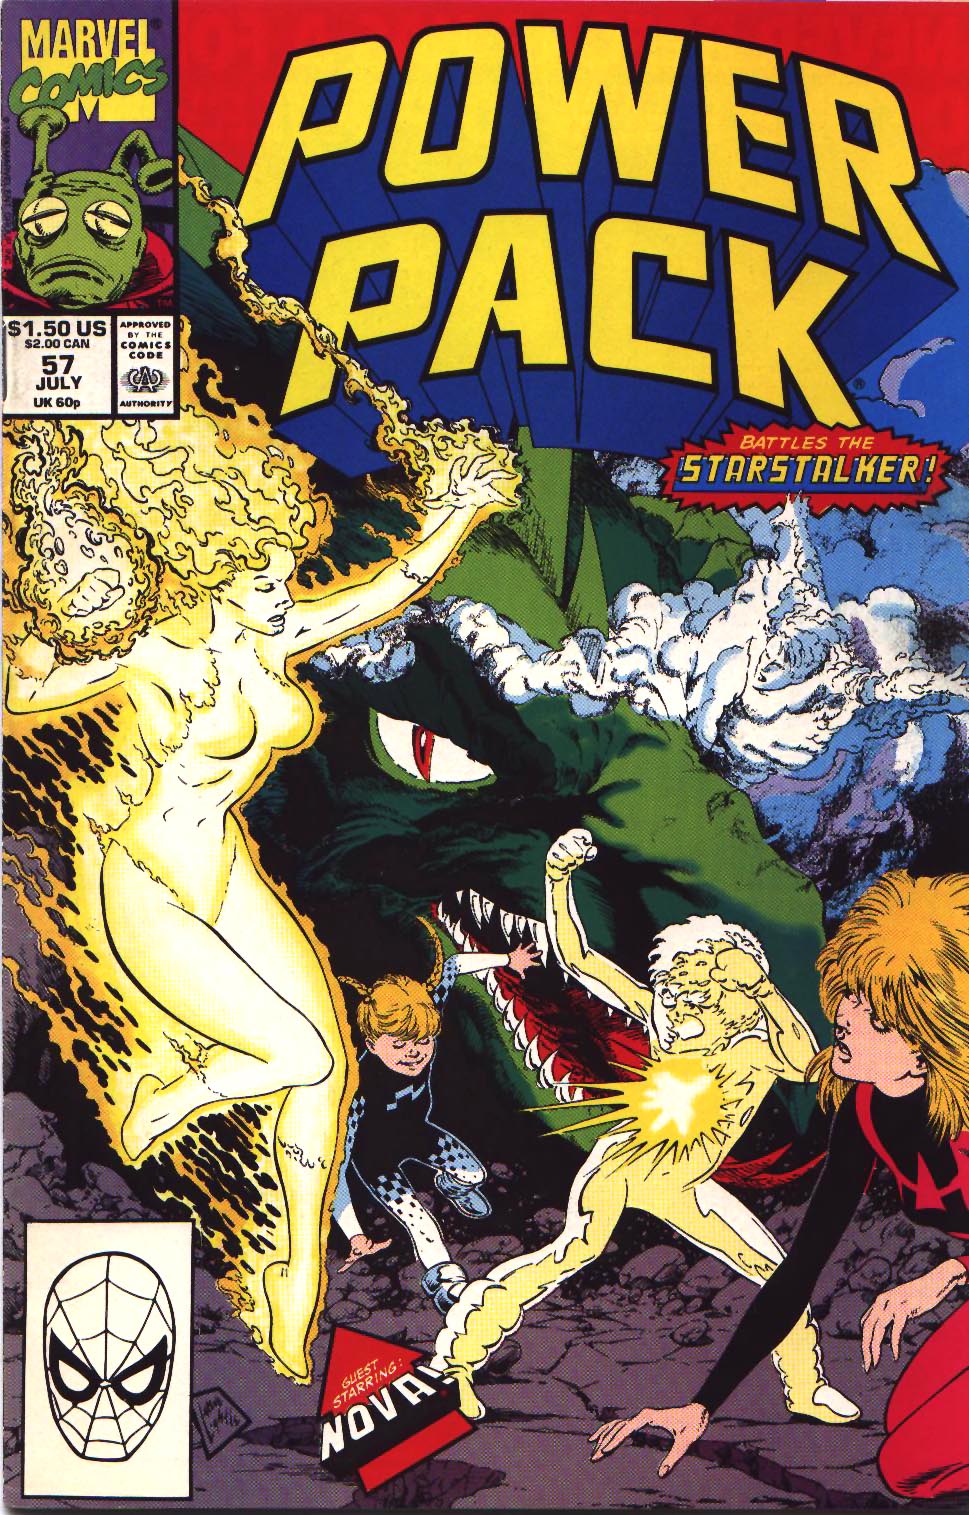 Power pack комикс. POWERPACK комиксы. Power Pack Marvel Vintage.